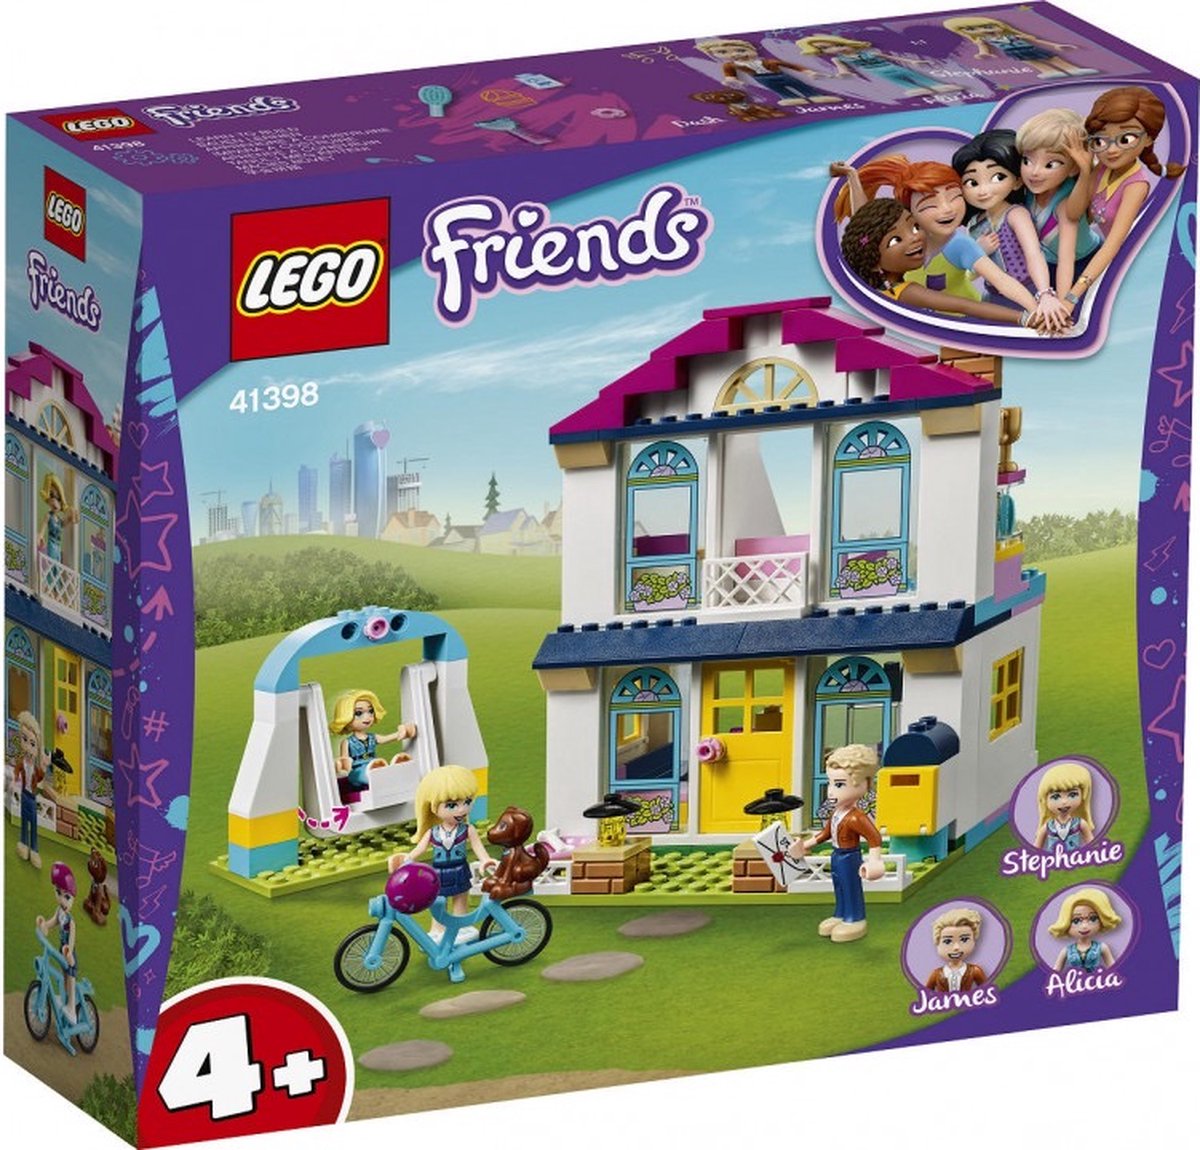 LEGO Friends 4+ Stephanie’s Huis – 41398